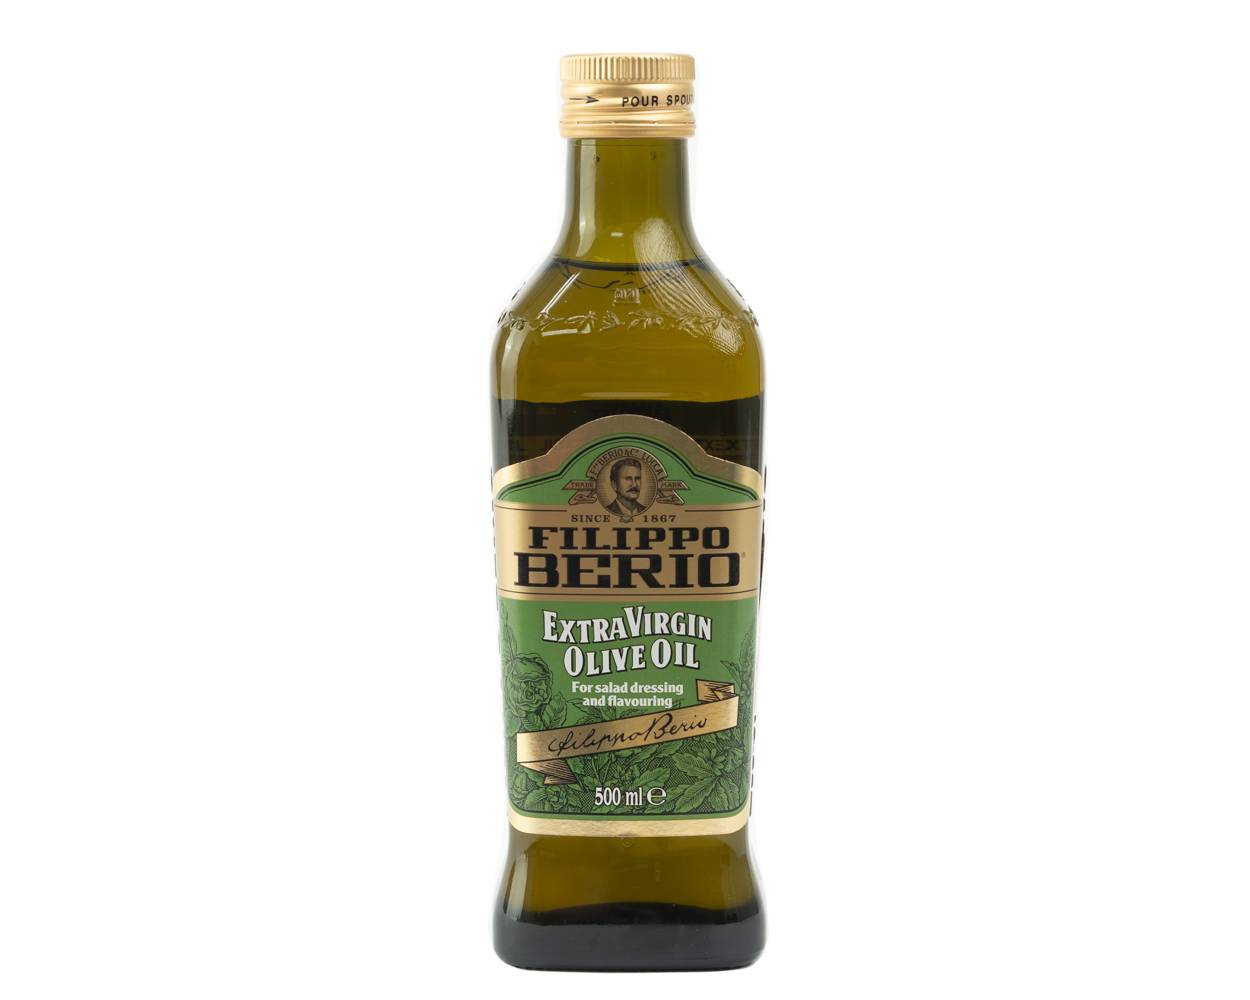 Filippo berio aceite de oliva extra virgen (500 ml)